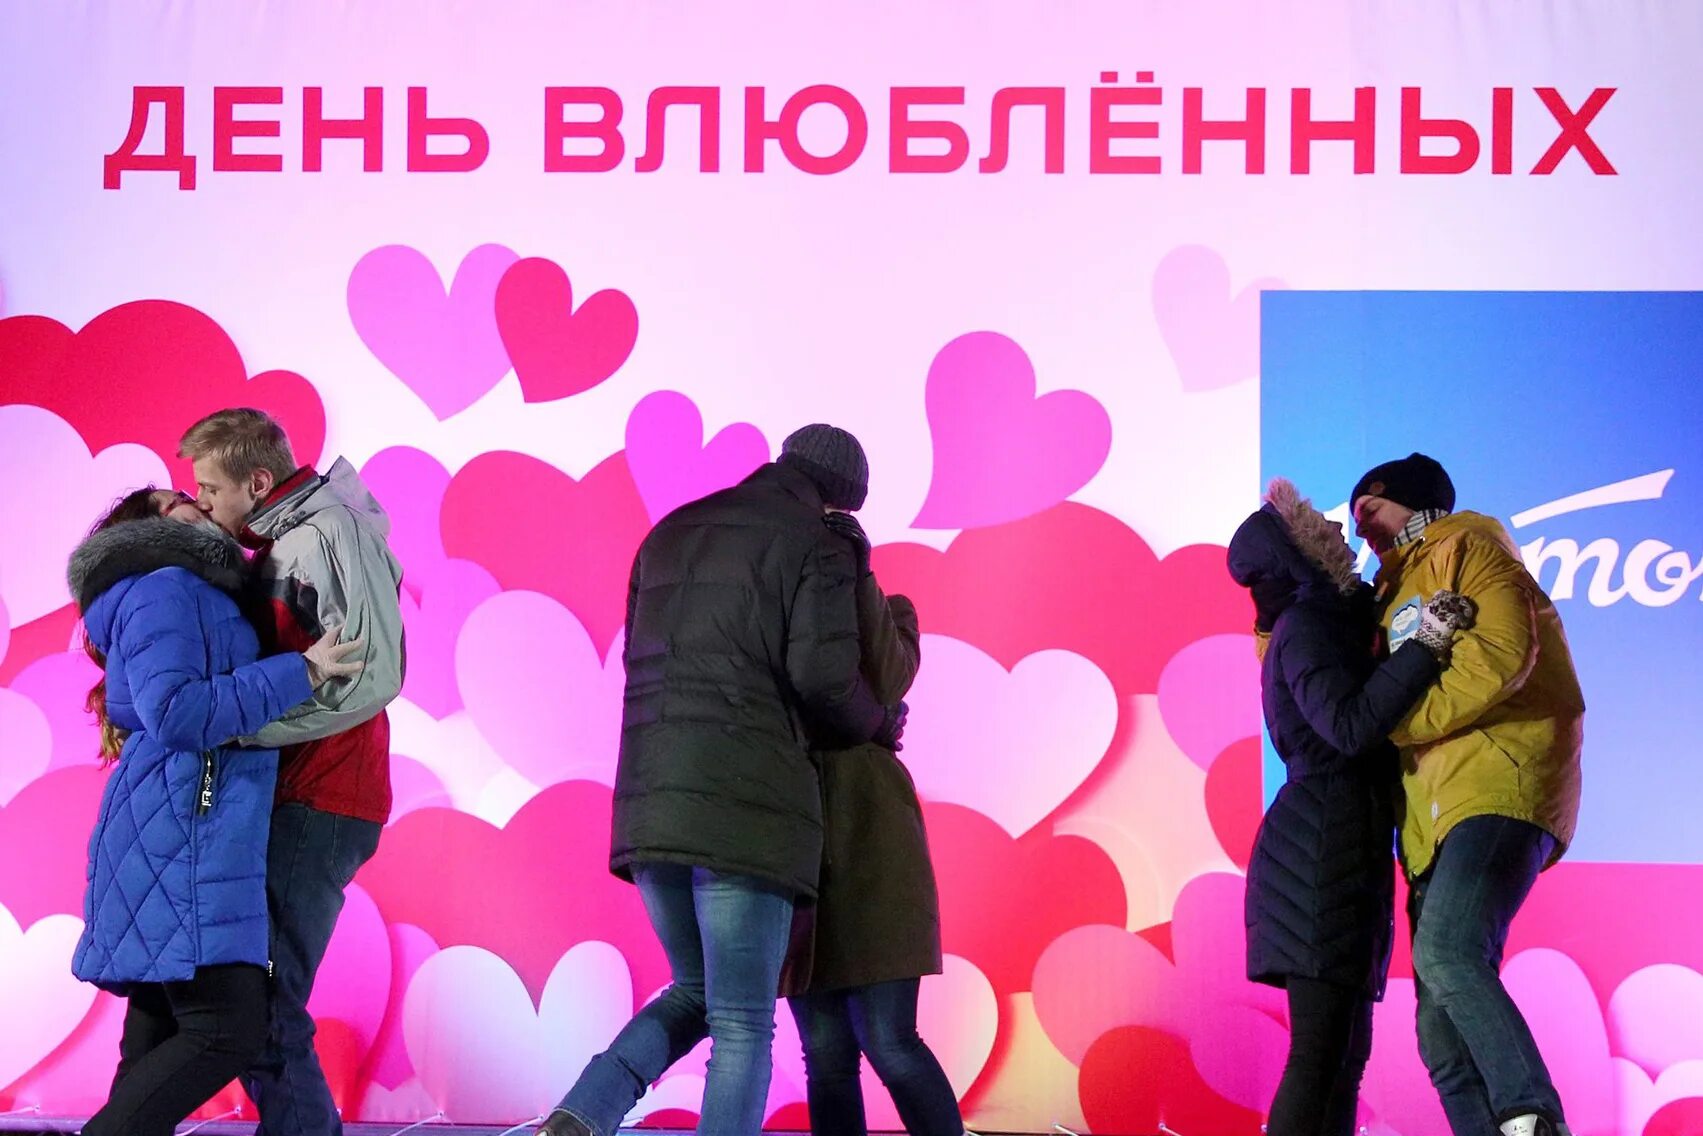 Праздник сегодня в россии 14 февраля. С днем влюбленных. 14 Февраля праздник. С днём всех влюблённых. Российский день влюбленных.